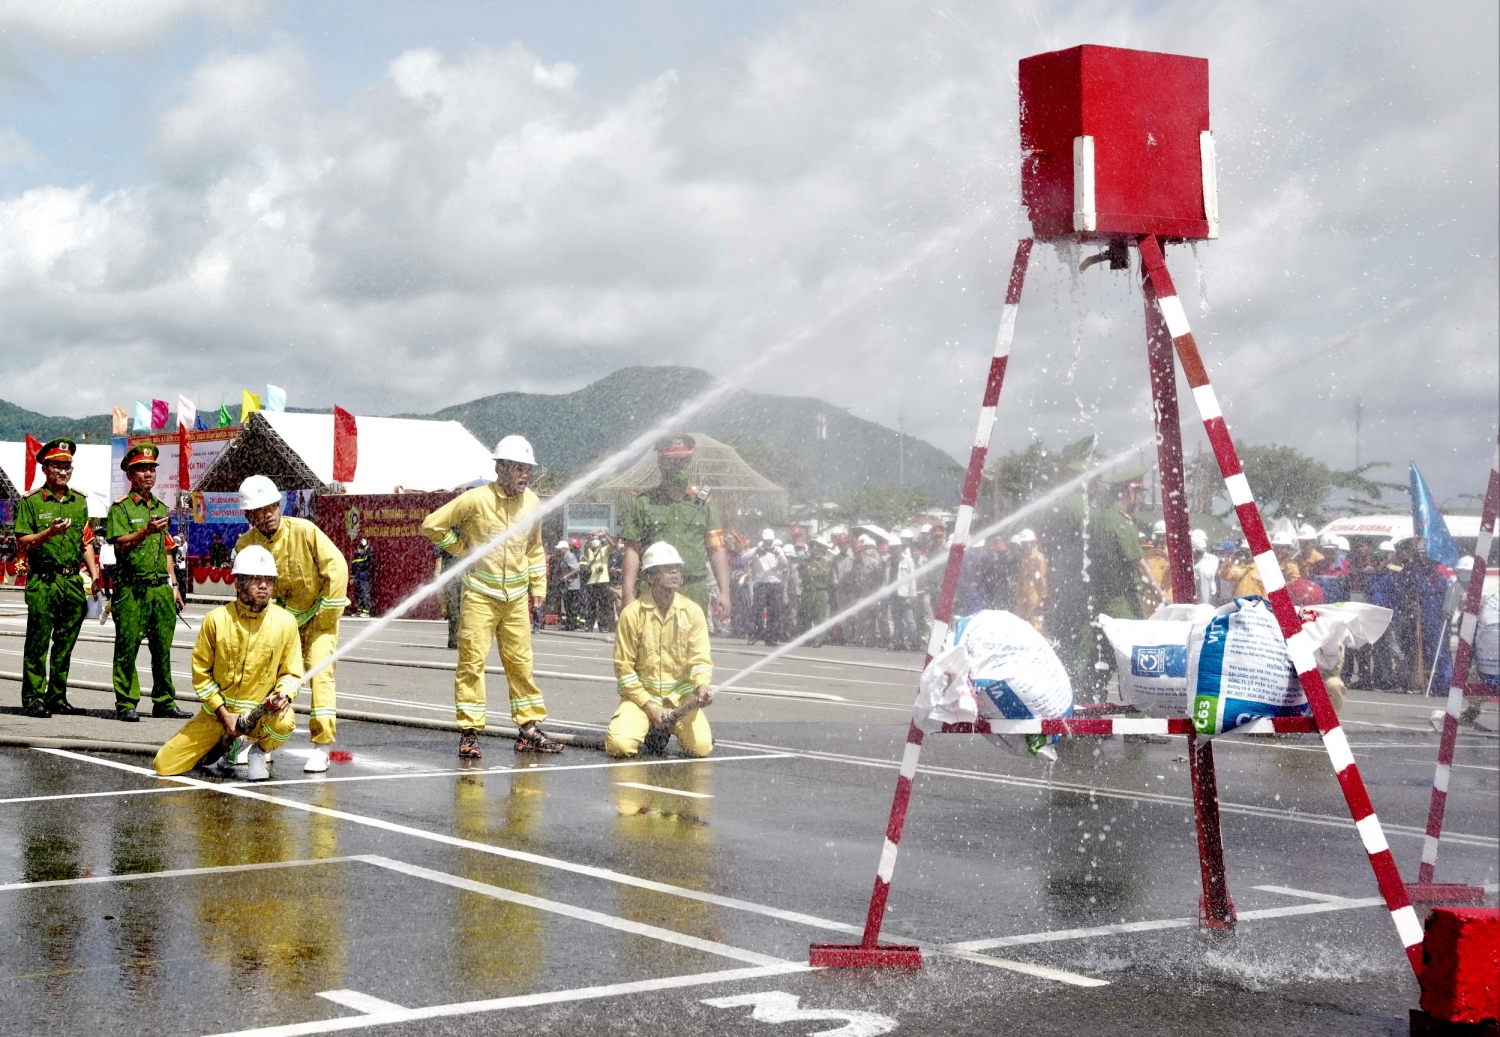 Đội tuyển KVT thực hiện bài thi sử dụng xe chữa cháy để dập lửa nhanh